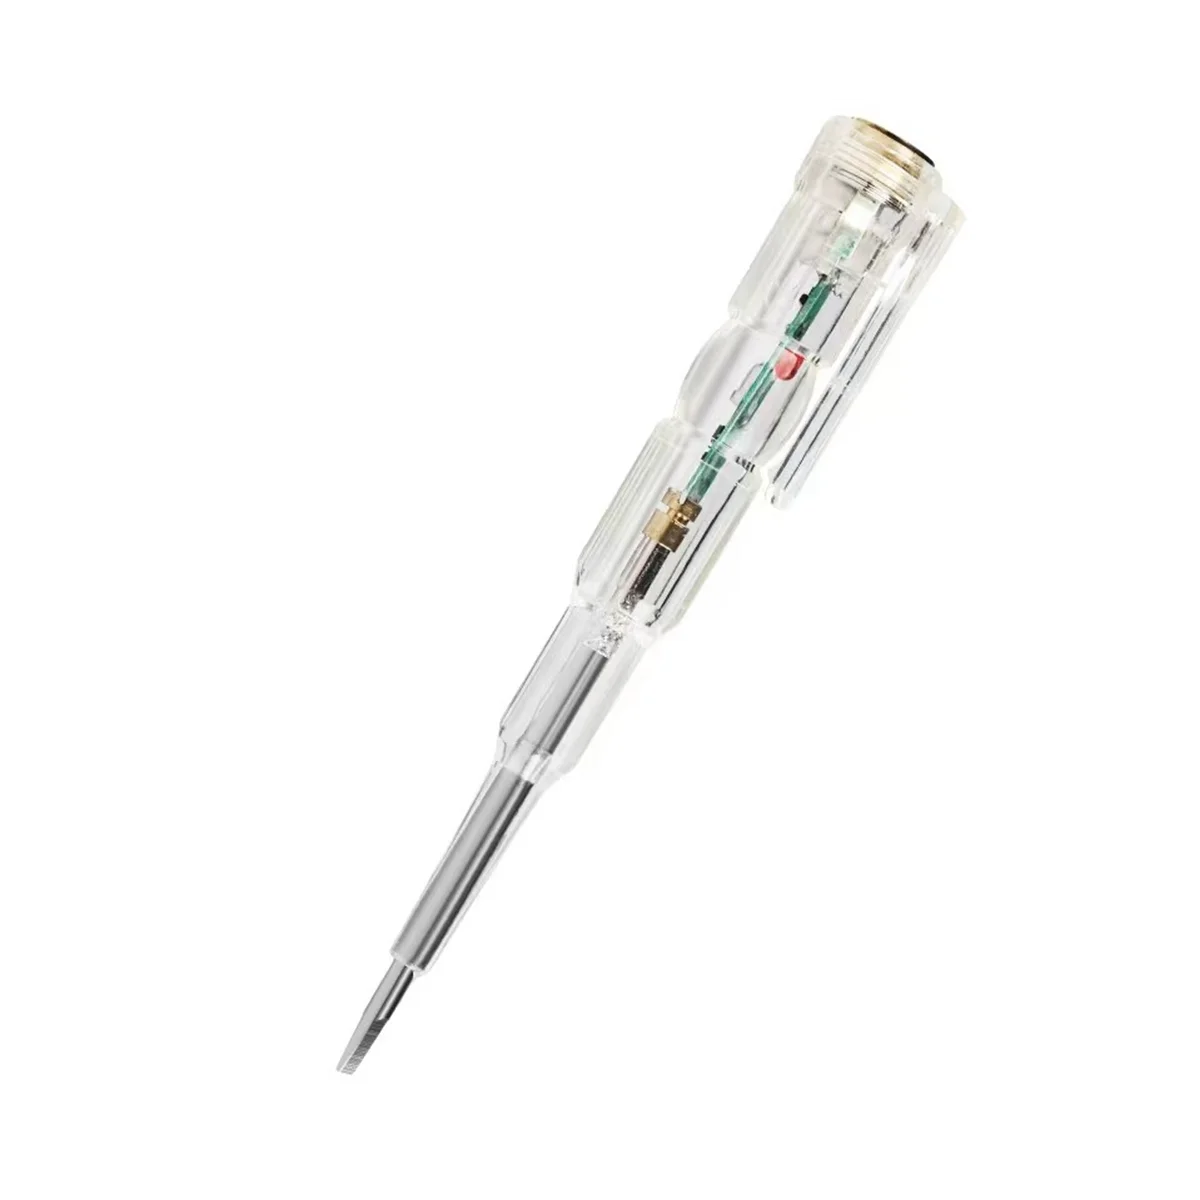  többfunkciós elektromos toll nagy fényerejű dupla lámpás elektromos toll mérő villanyszerelő indukciós ceruza - 0